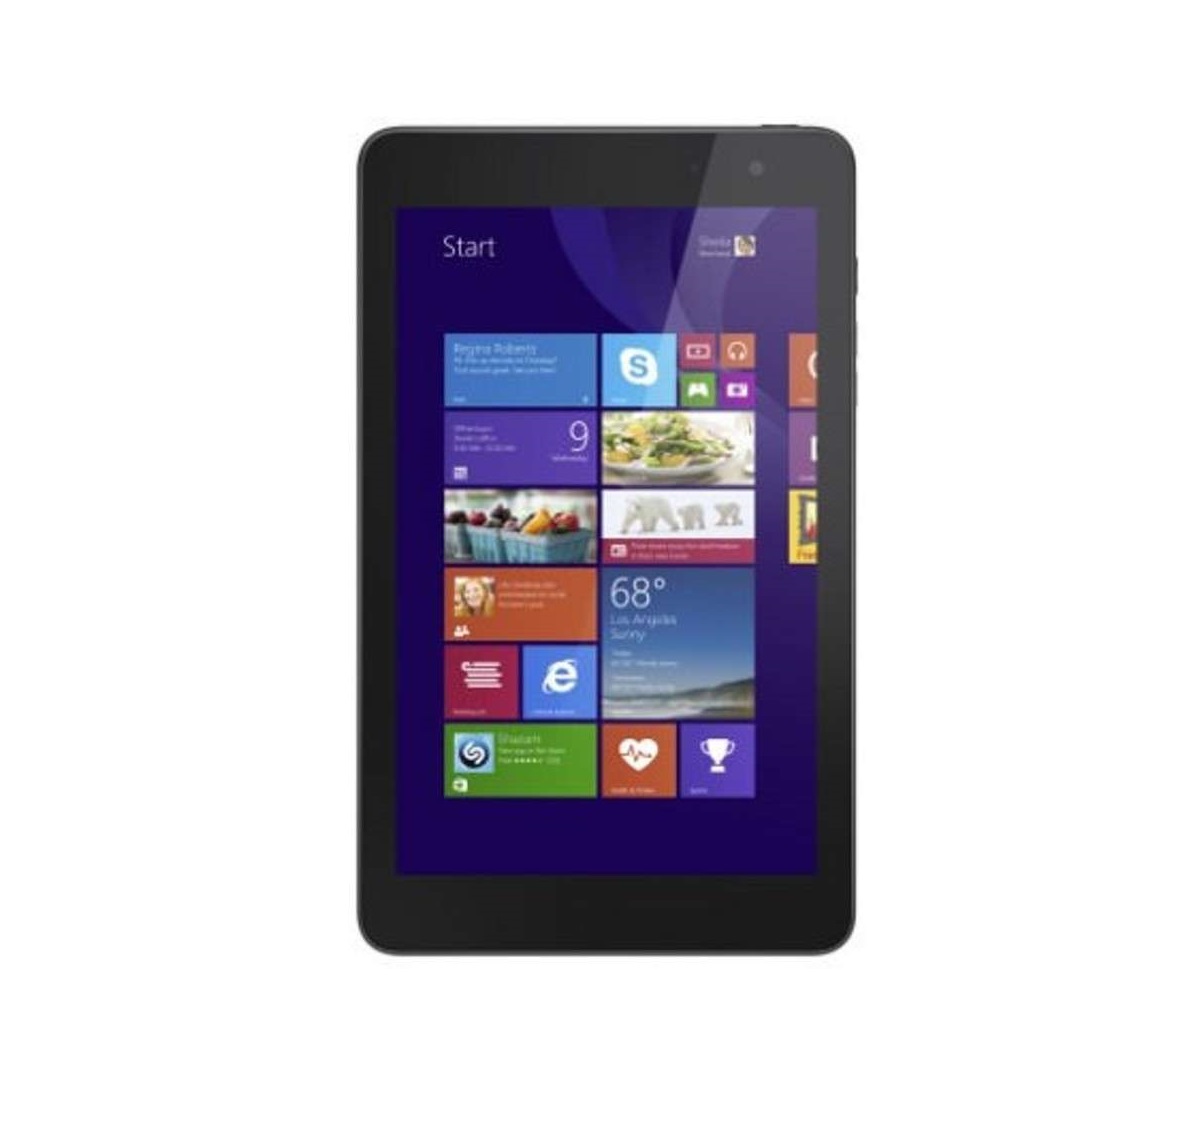 Dell Venue 8 (5830) 16GB | Wi-Fi | 8-Inch – Black Tablet